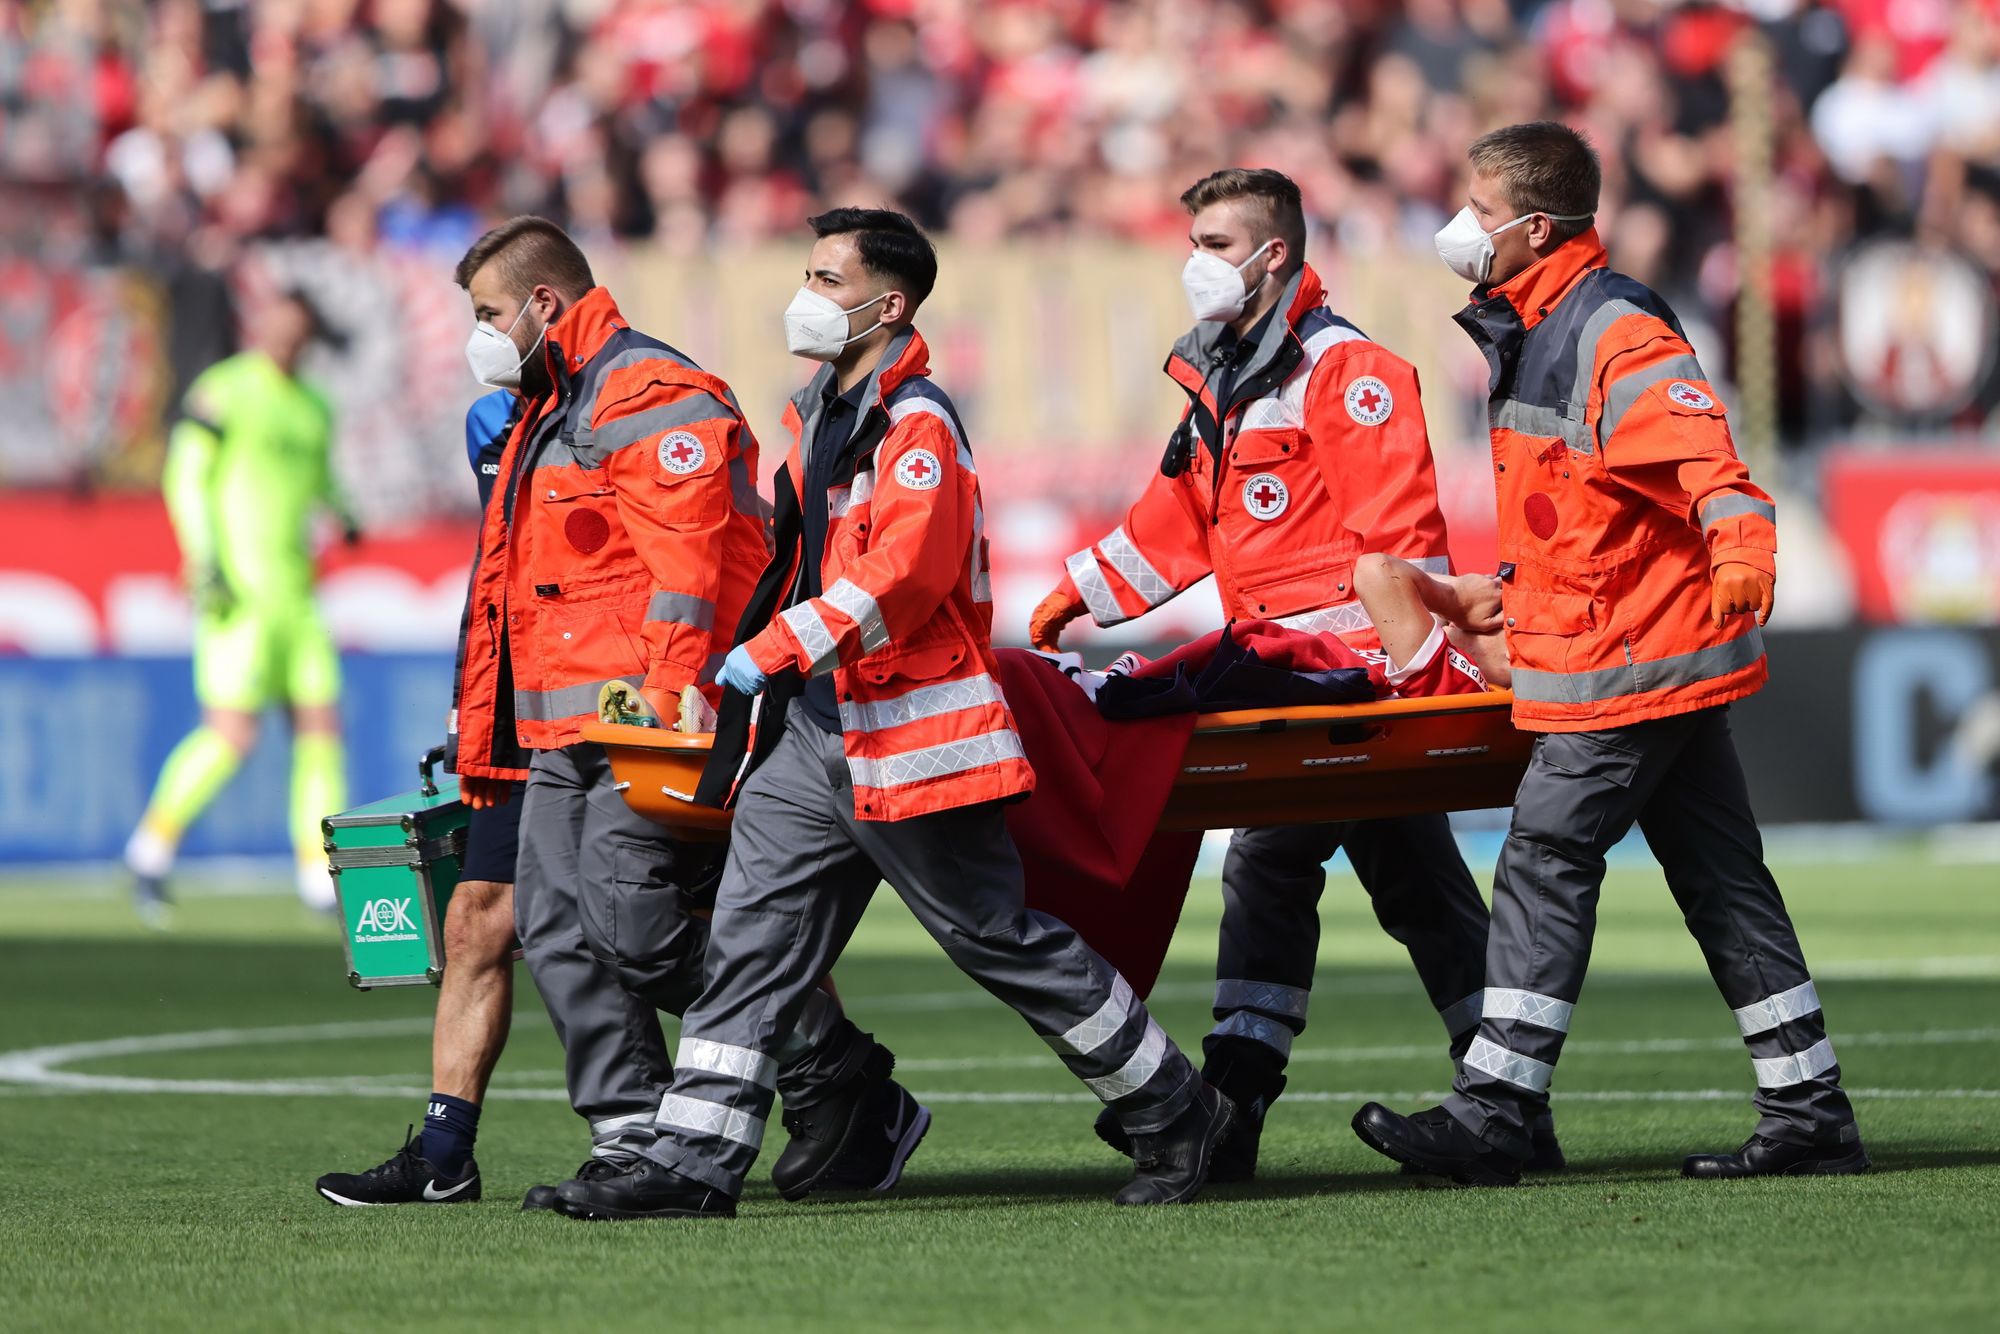 Sallai Roland a Freiburg magyar labdarúgója súlyos sérülést szenvedett csapata Bayer Leverkusen elleni mérkőzésén / Fotó GettyImages